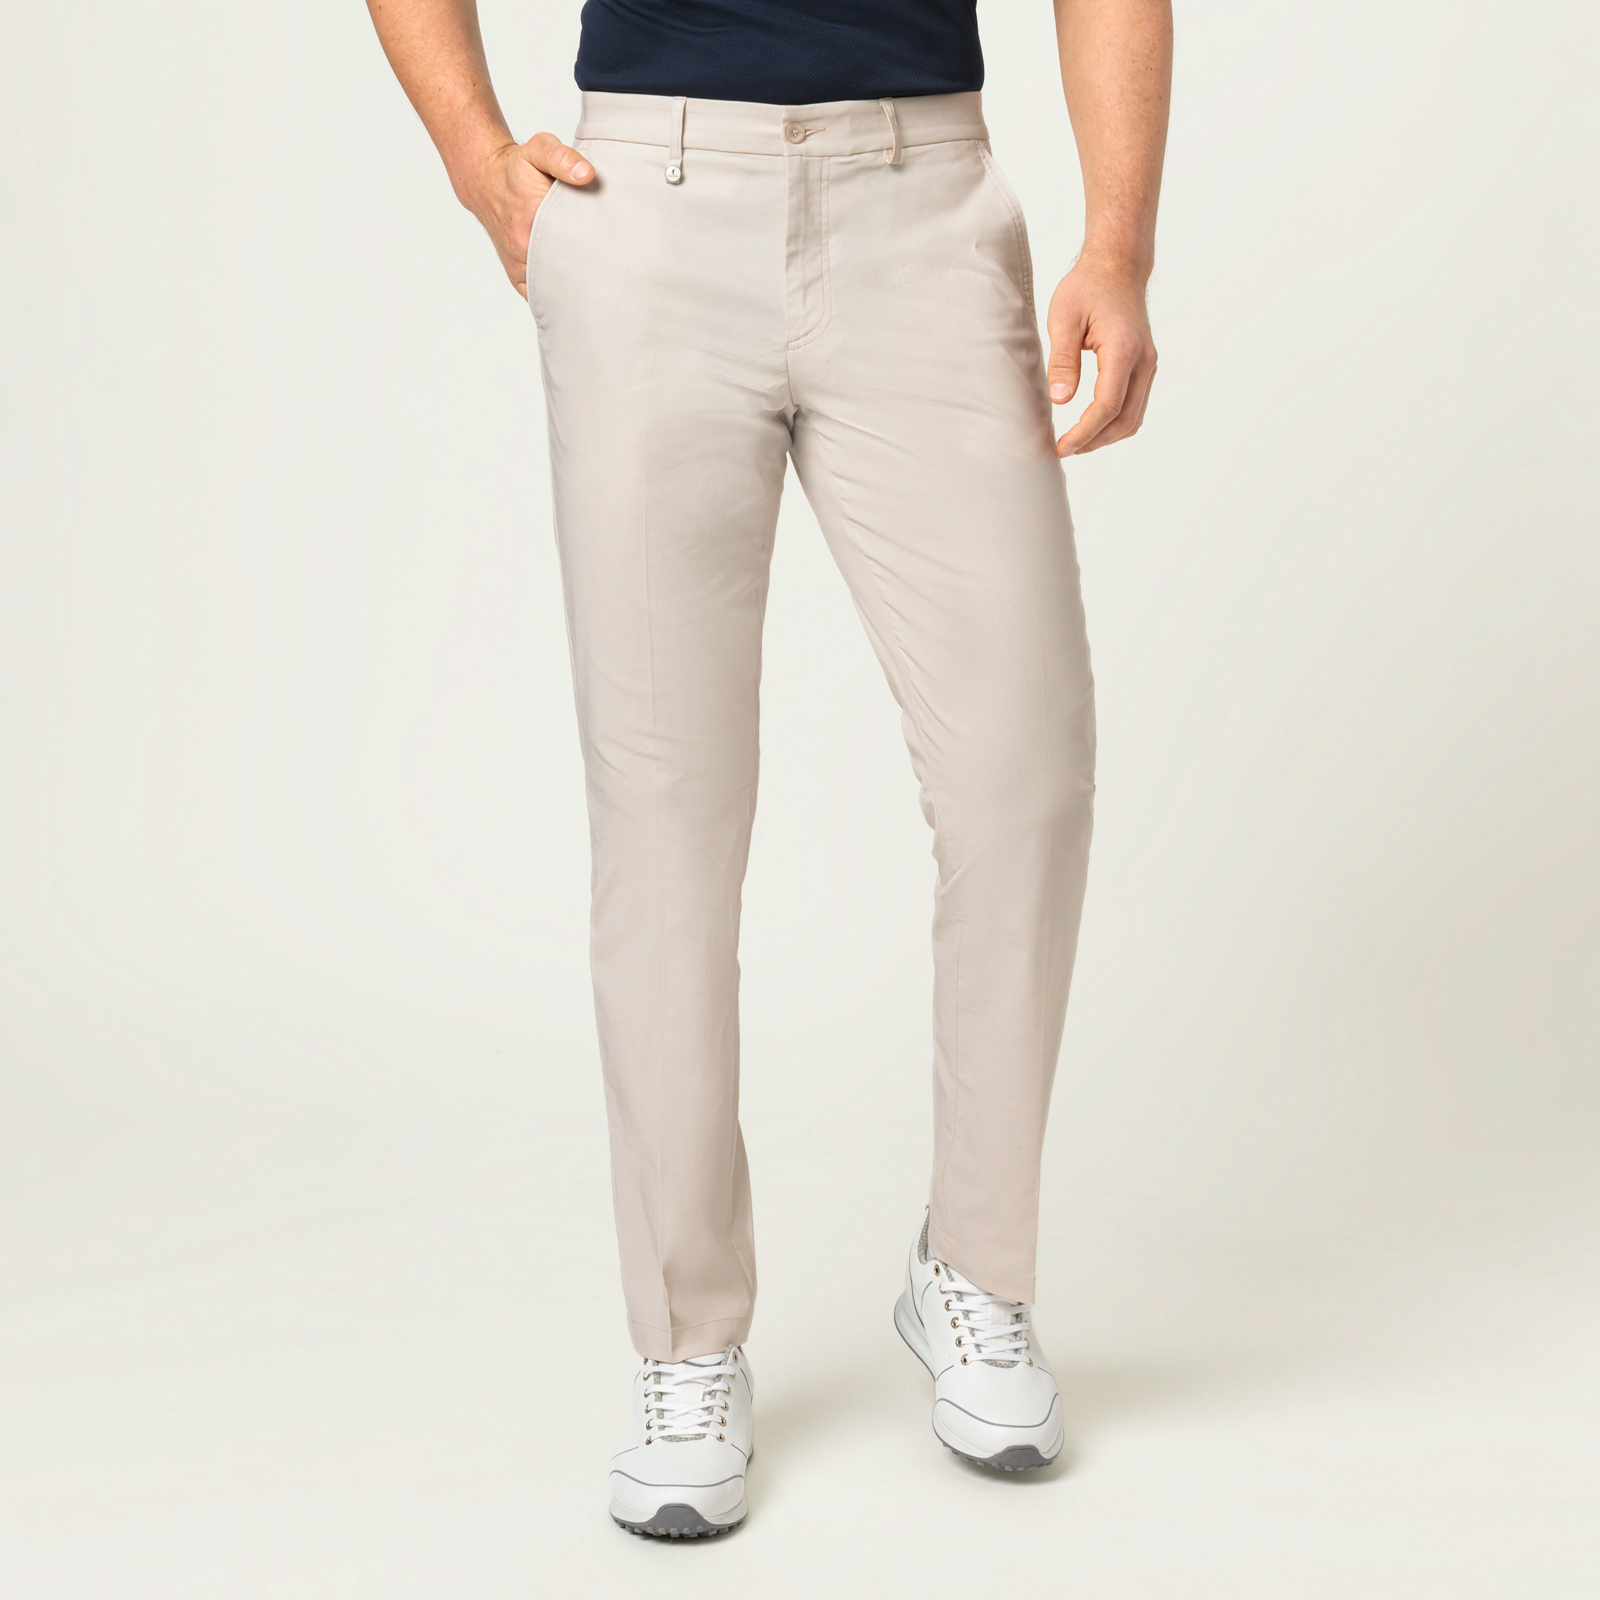 Pantalon de golf pour hommes de qualité élastique avec fonction stretch